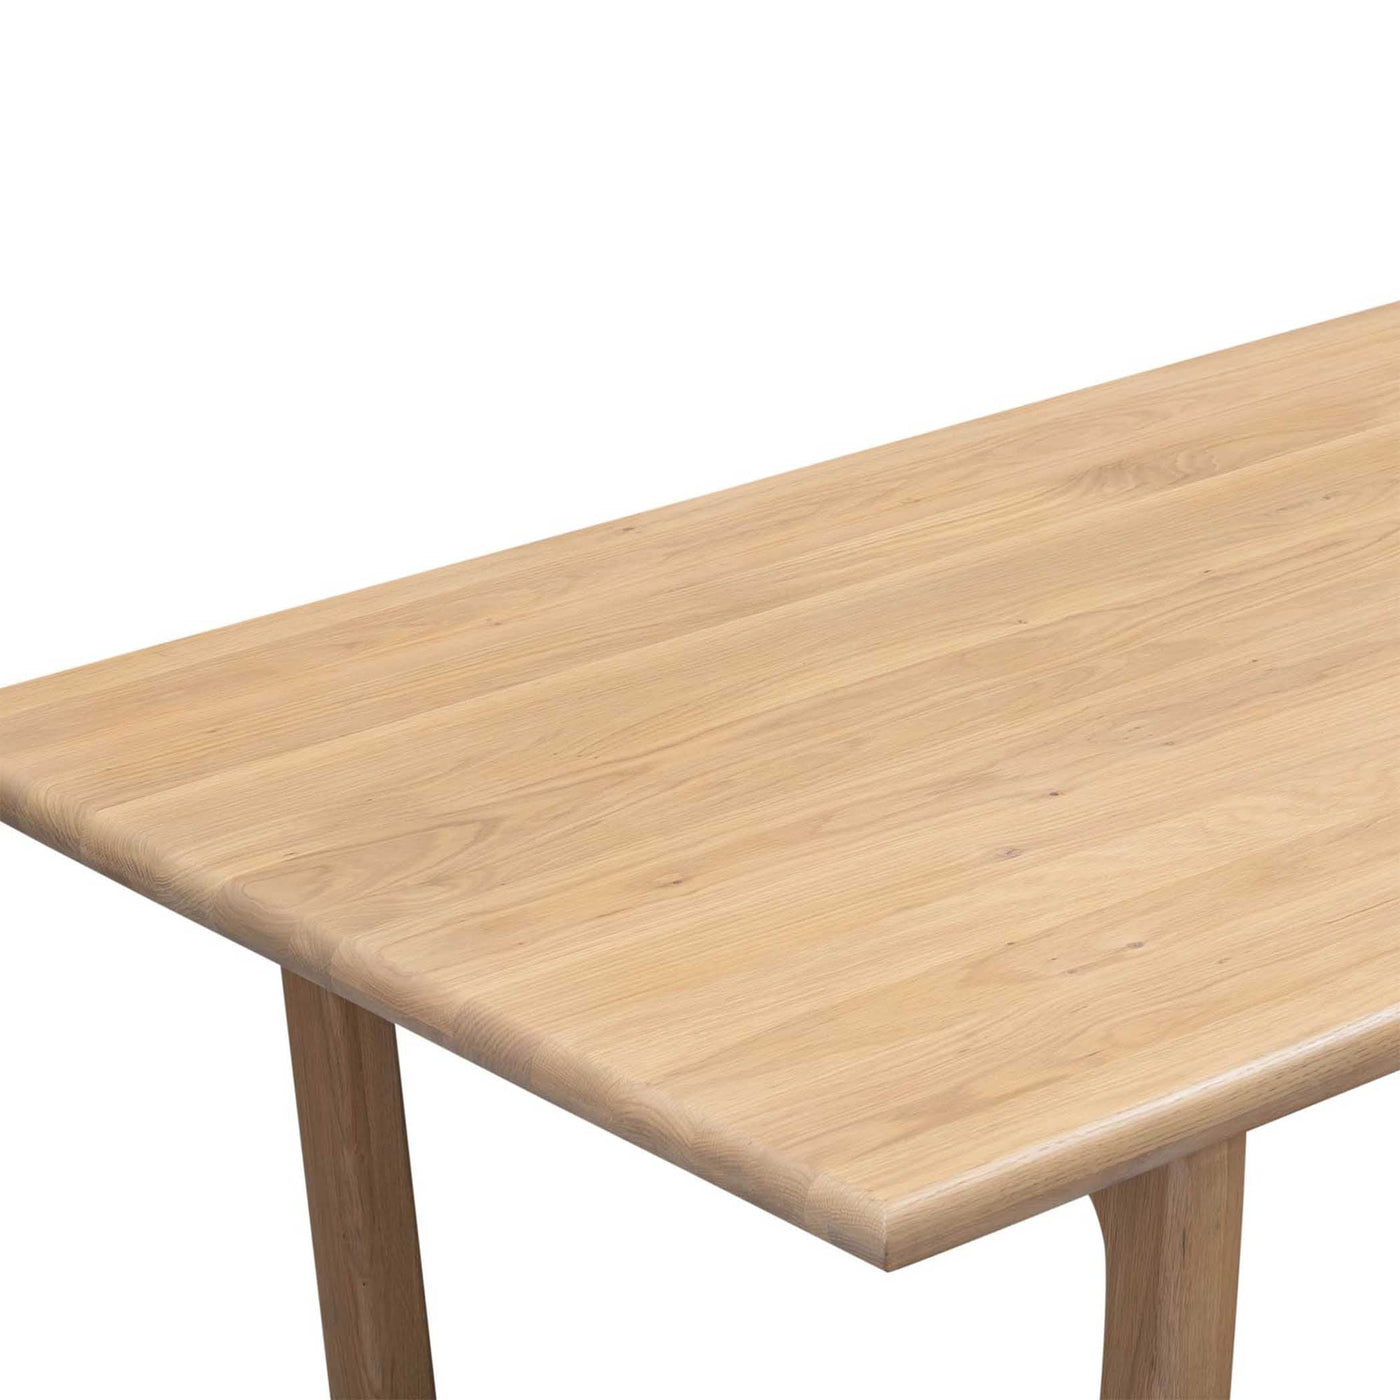 Fabriquée en chêne américain massif, la table à dîner Elixir allie beauté intemporelle et durabilité exceptionnelle. Design fonctionnel pouvant accueillir jusqu'à 6 personnes.